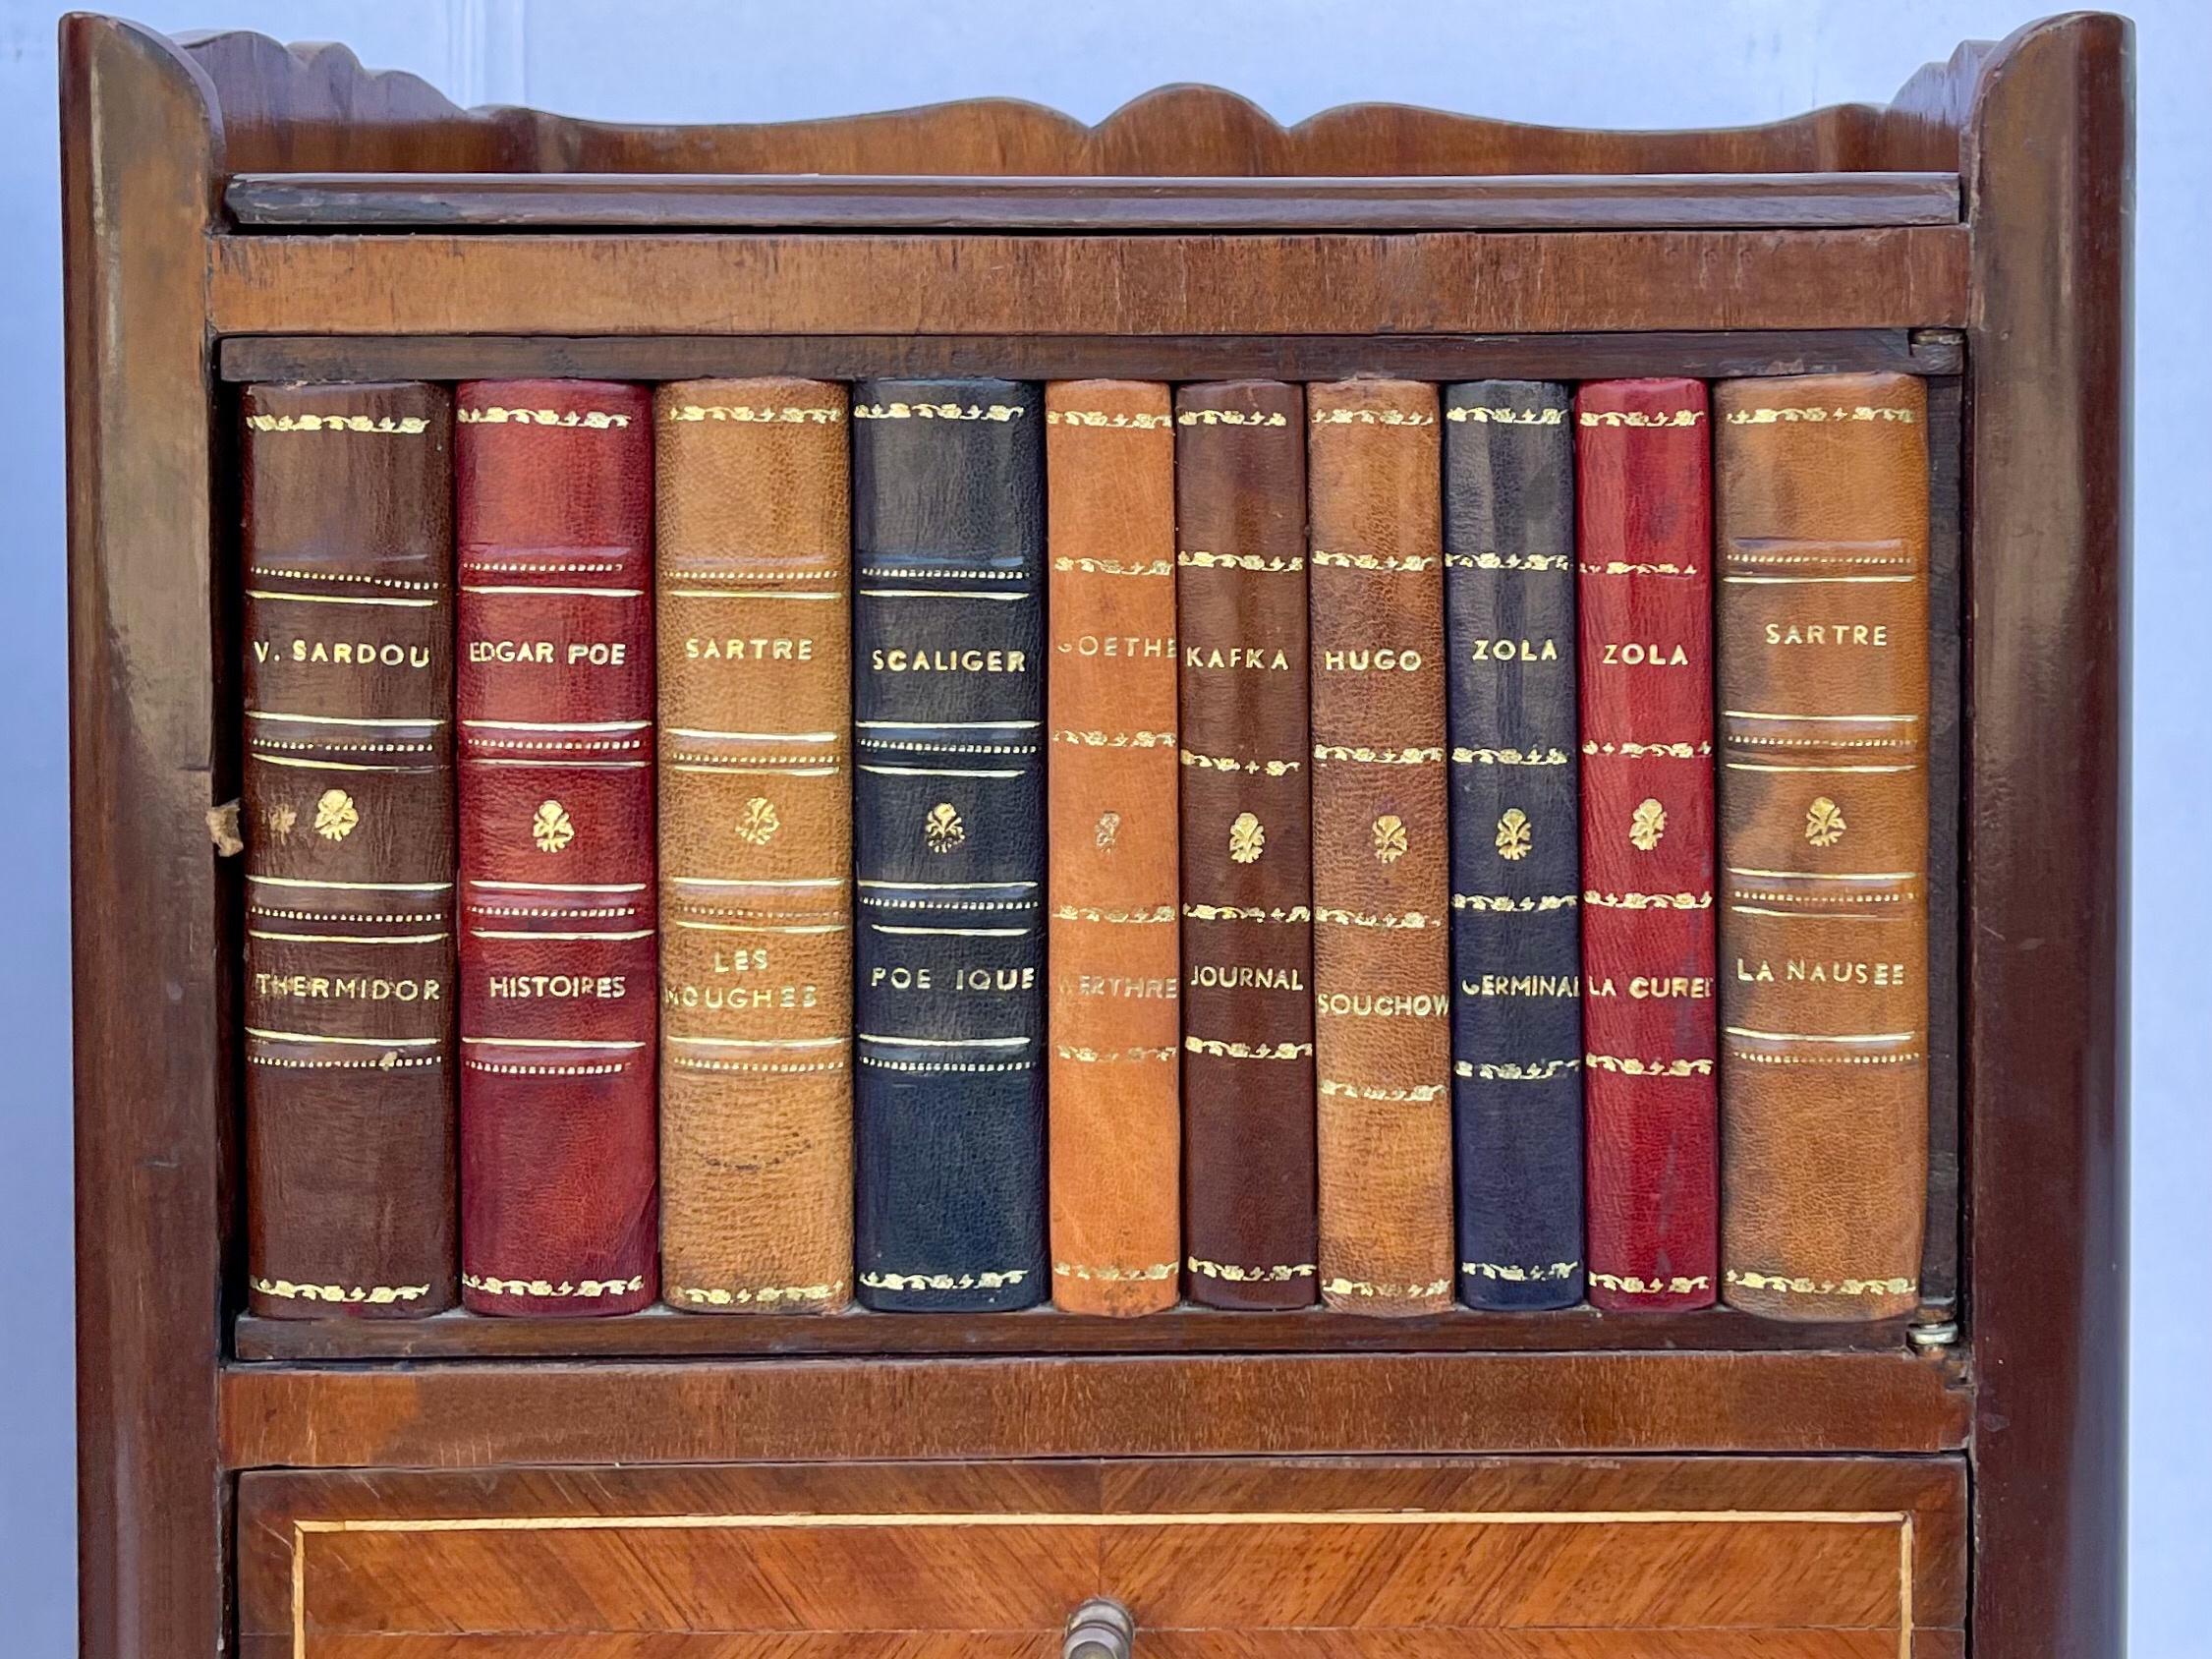 Dies ist ein Paar Mahagoni und Satinholz Intarsien faux Buch Tische mit Französisch Styling. Die geprägten Ledereinbände stellen die Klassiker dar und geben den Blick frei auf versteckte Ablagen. Sie sind unversehrt und in sehr gutem Zustand.